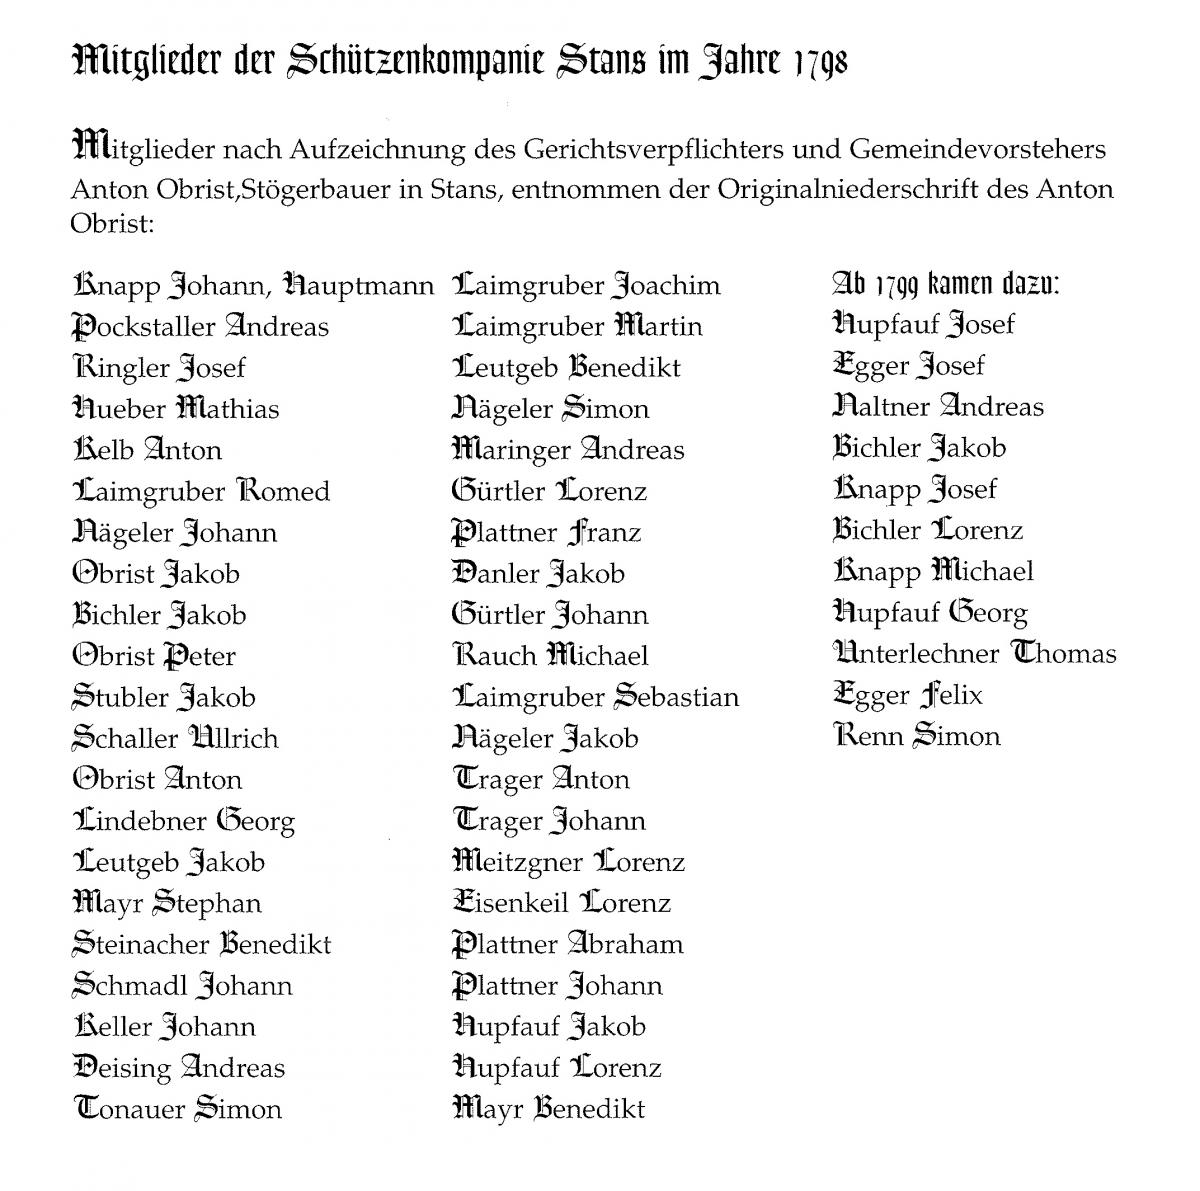 Mitgliederliste der Schützenkompanie Stans aus dem Jahre 1798